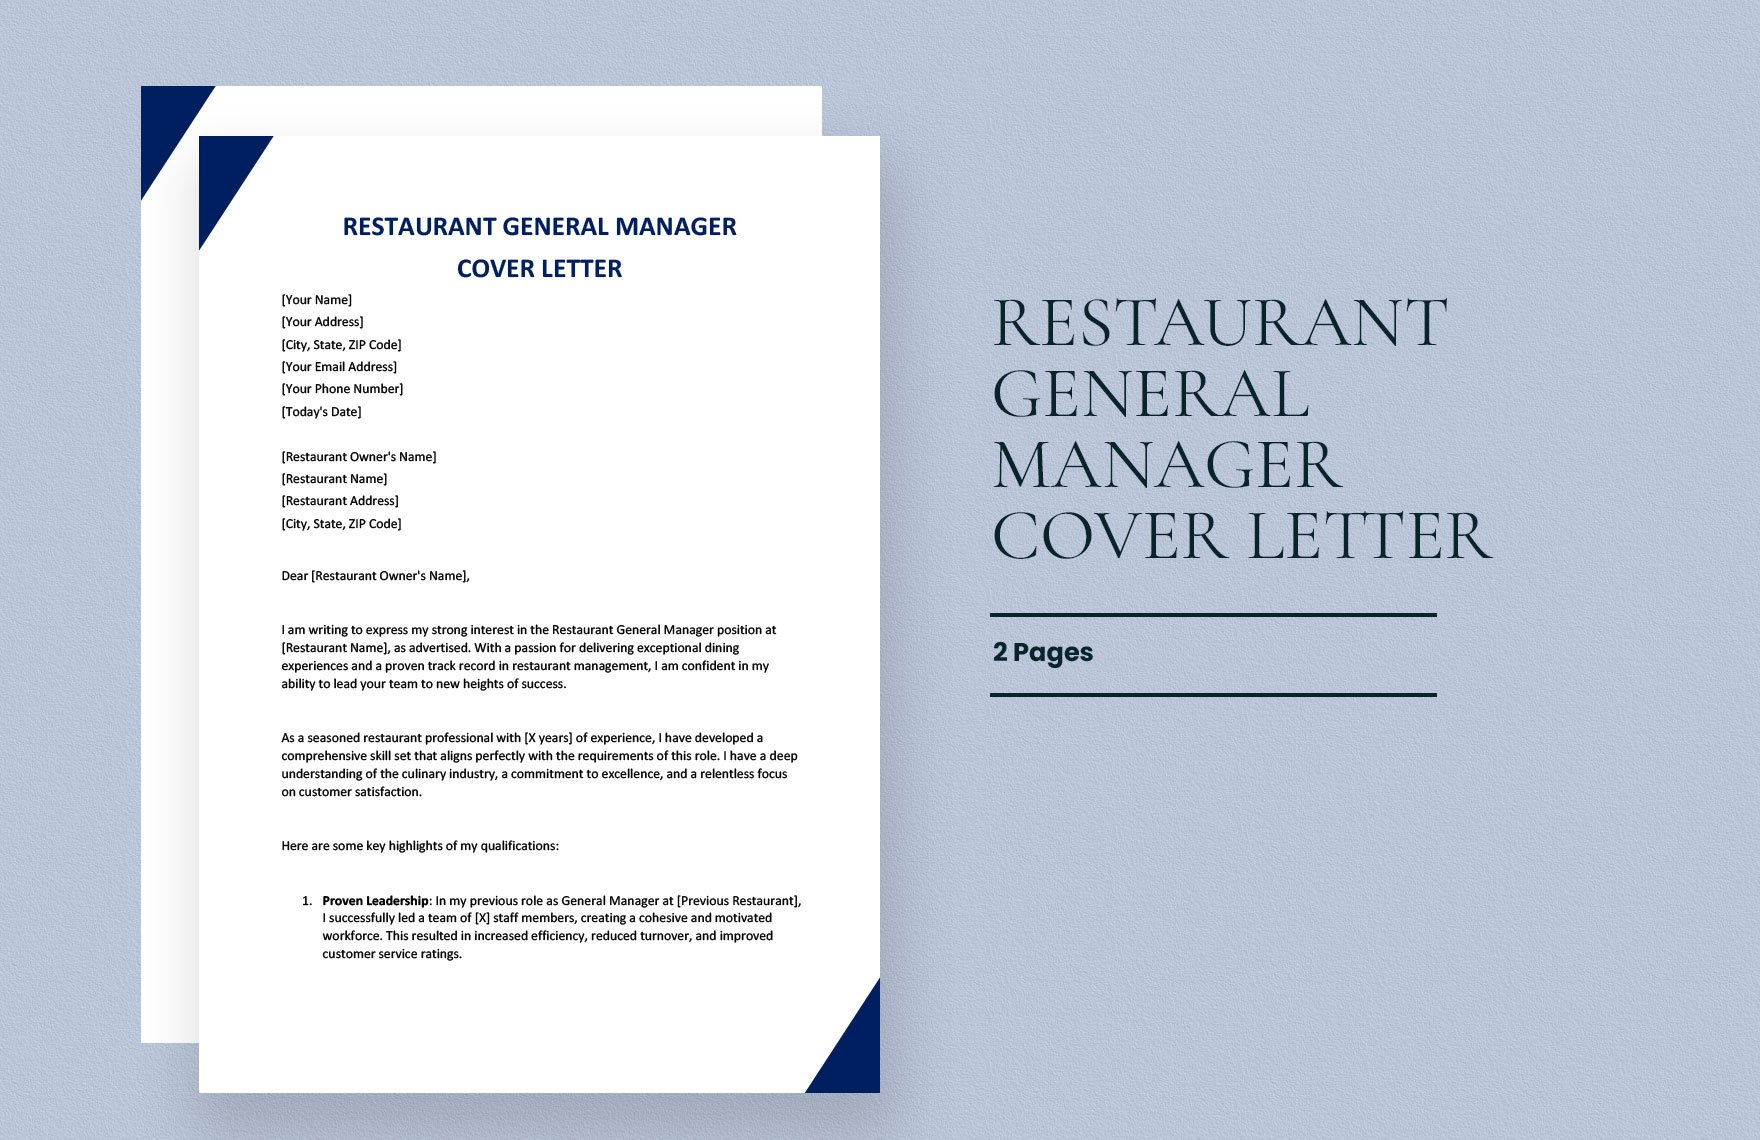 Restaurant General Manager Cover Letter